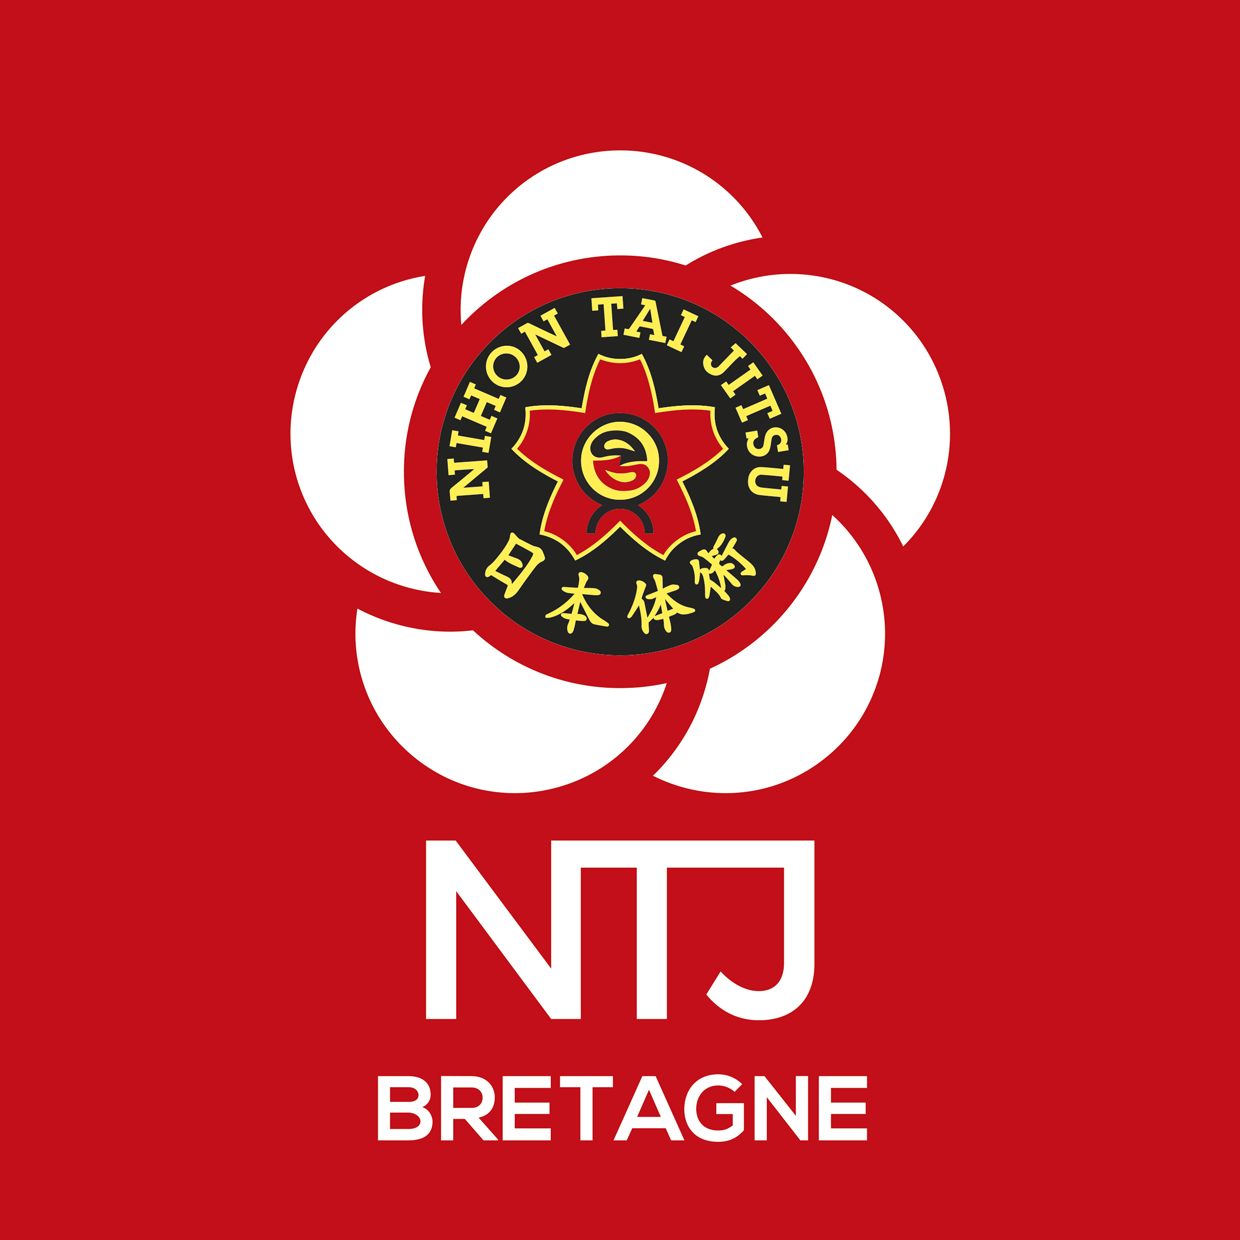 NTJ region BRETAGNE logo rvb